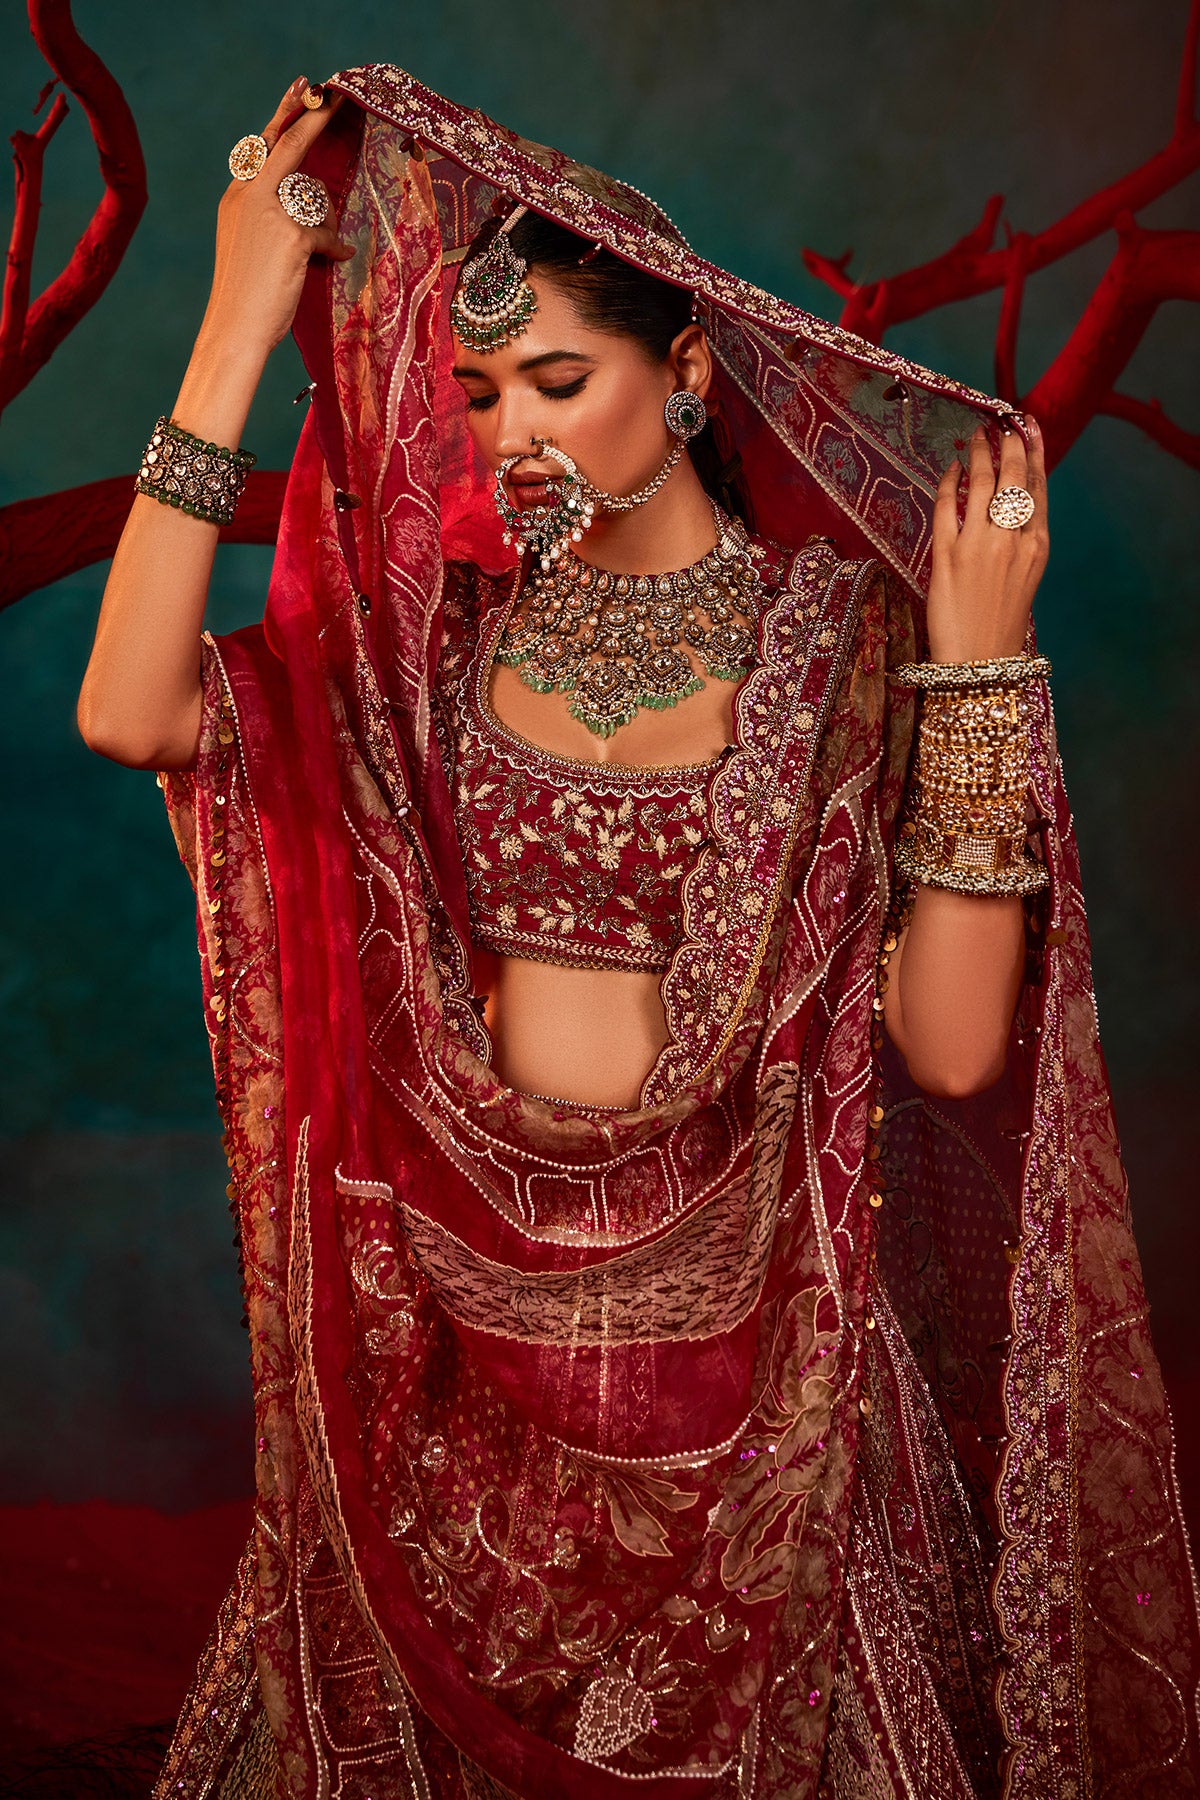 Bilaspur News: वैवाहिक के सीजन में सजा बाजार, डिजाइनर वेडिंग कलेक्शन की है  डिमांड - The market is busy during the wedding season there is a demand for  designer wedding collection